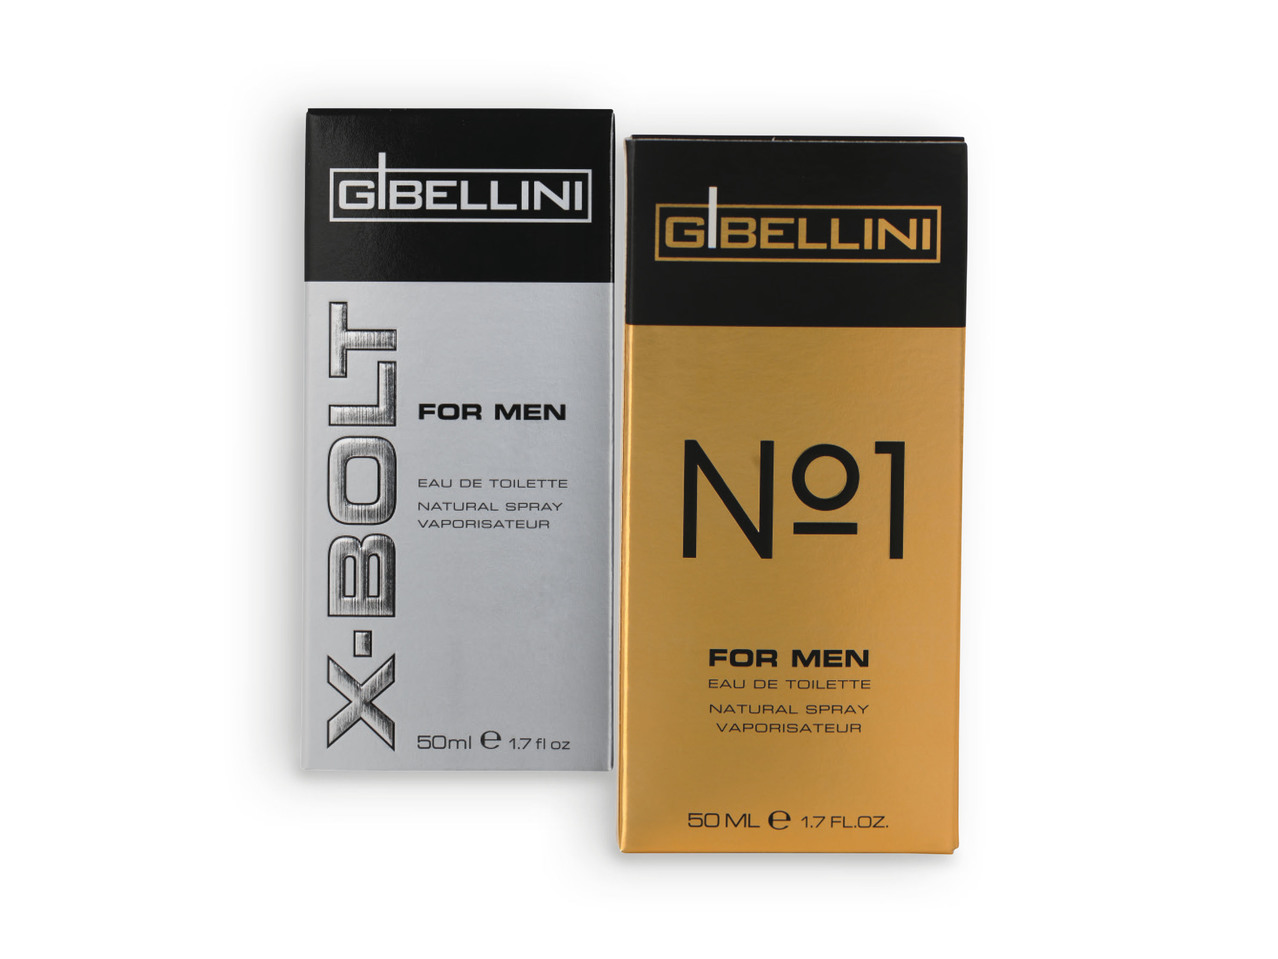 G. BELLINI(R) Eau de Toilette Men X-Bolt / Nº1